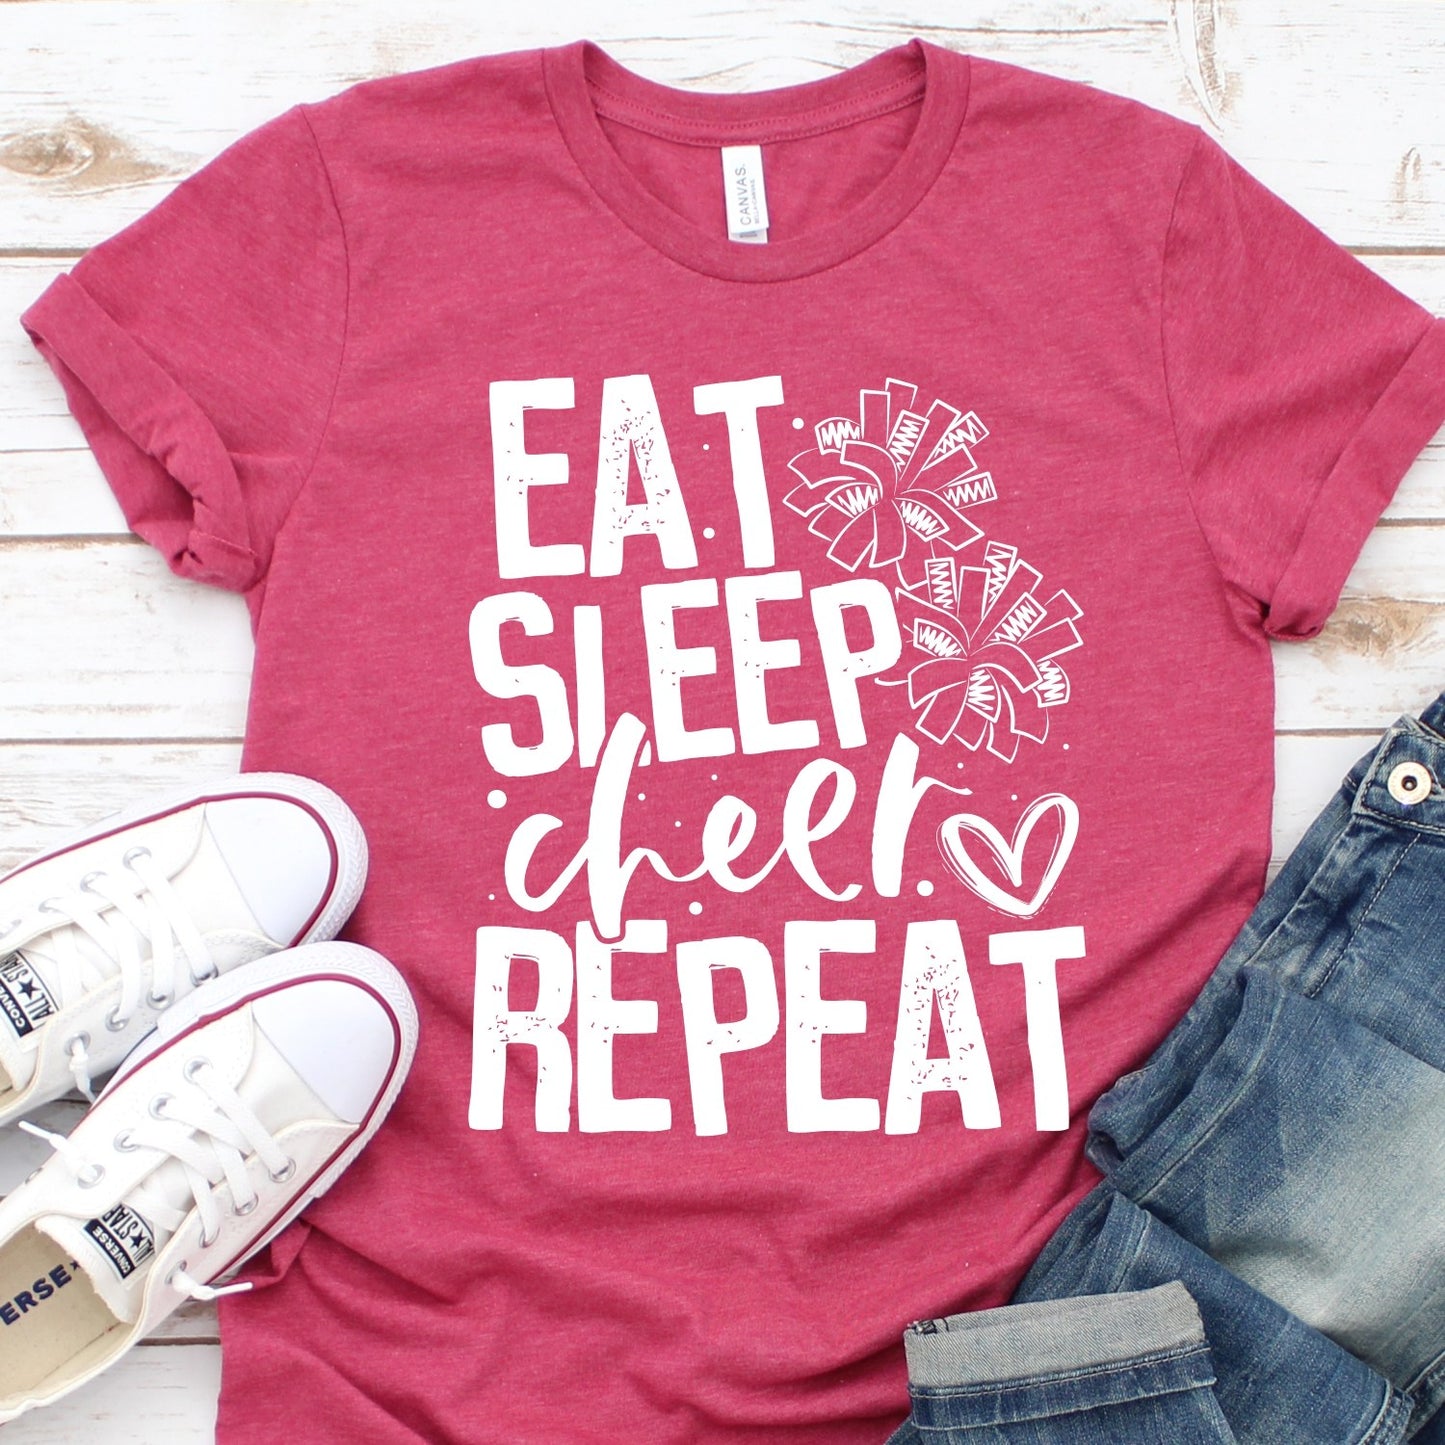 EAT SLEEP Cheer REPEAT